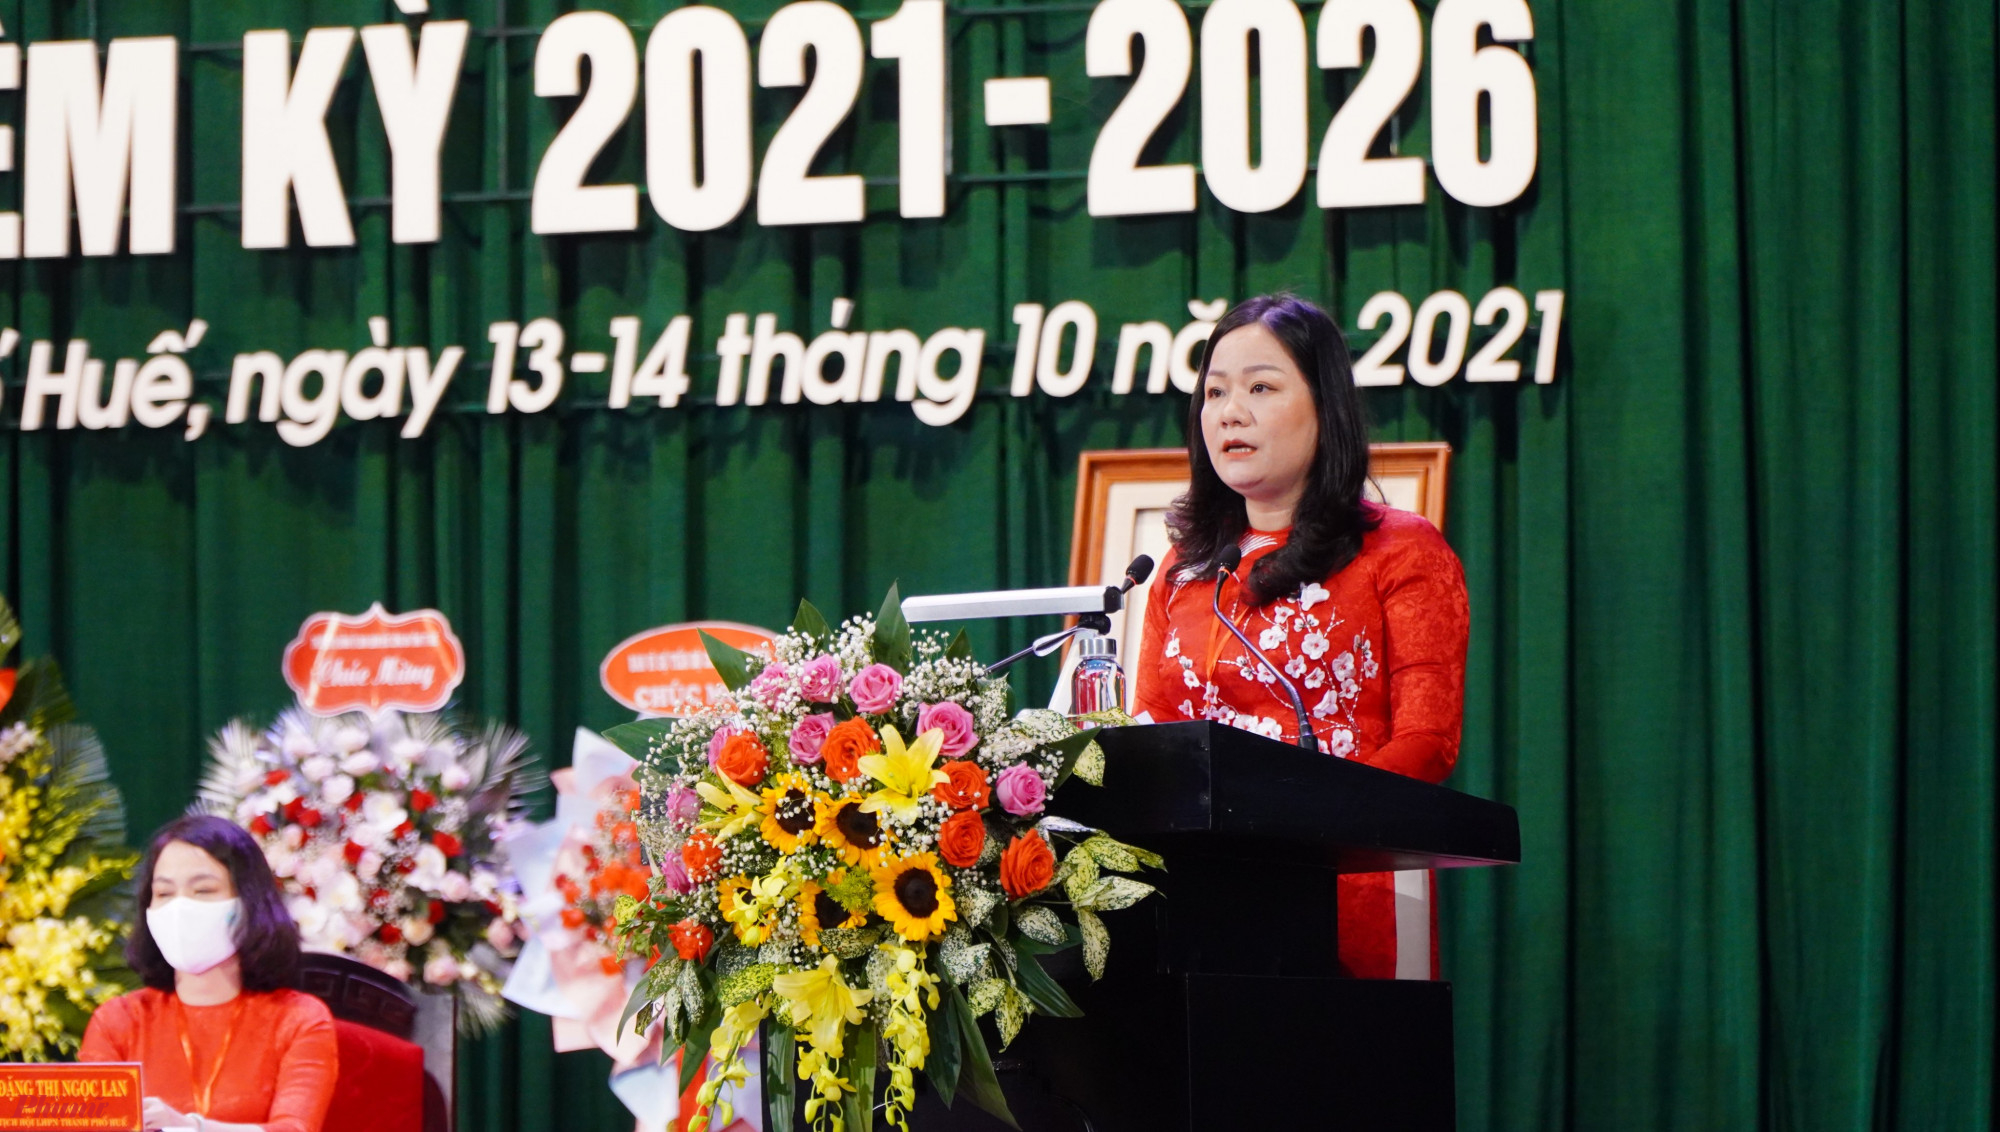 Bà Trần Thị Kim Loan, Chủ tịch Hội LHPN tỉnh Thừa Thiên - Huế  phát biểu khai mạc